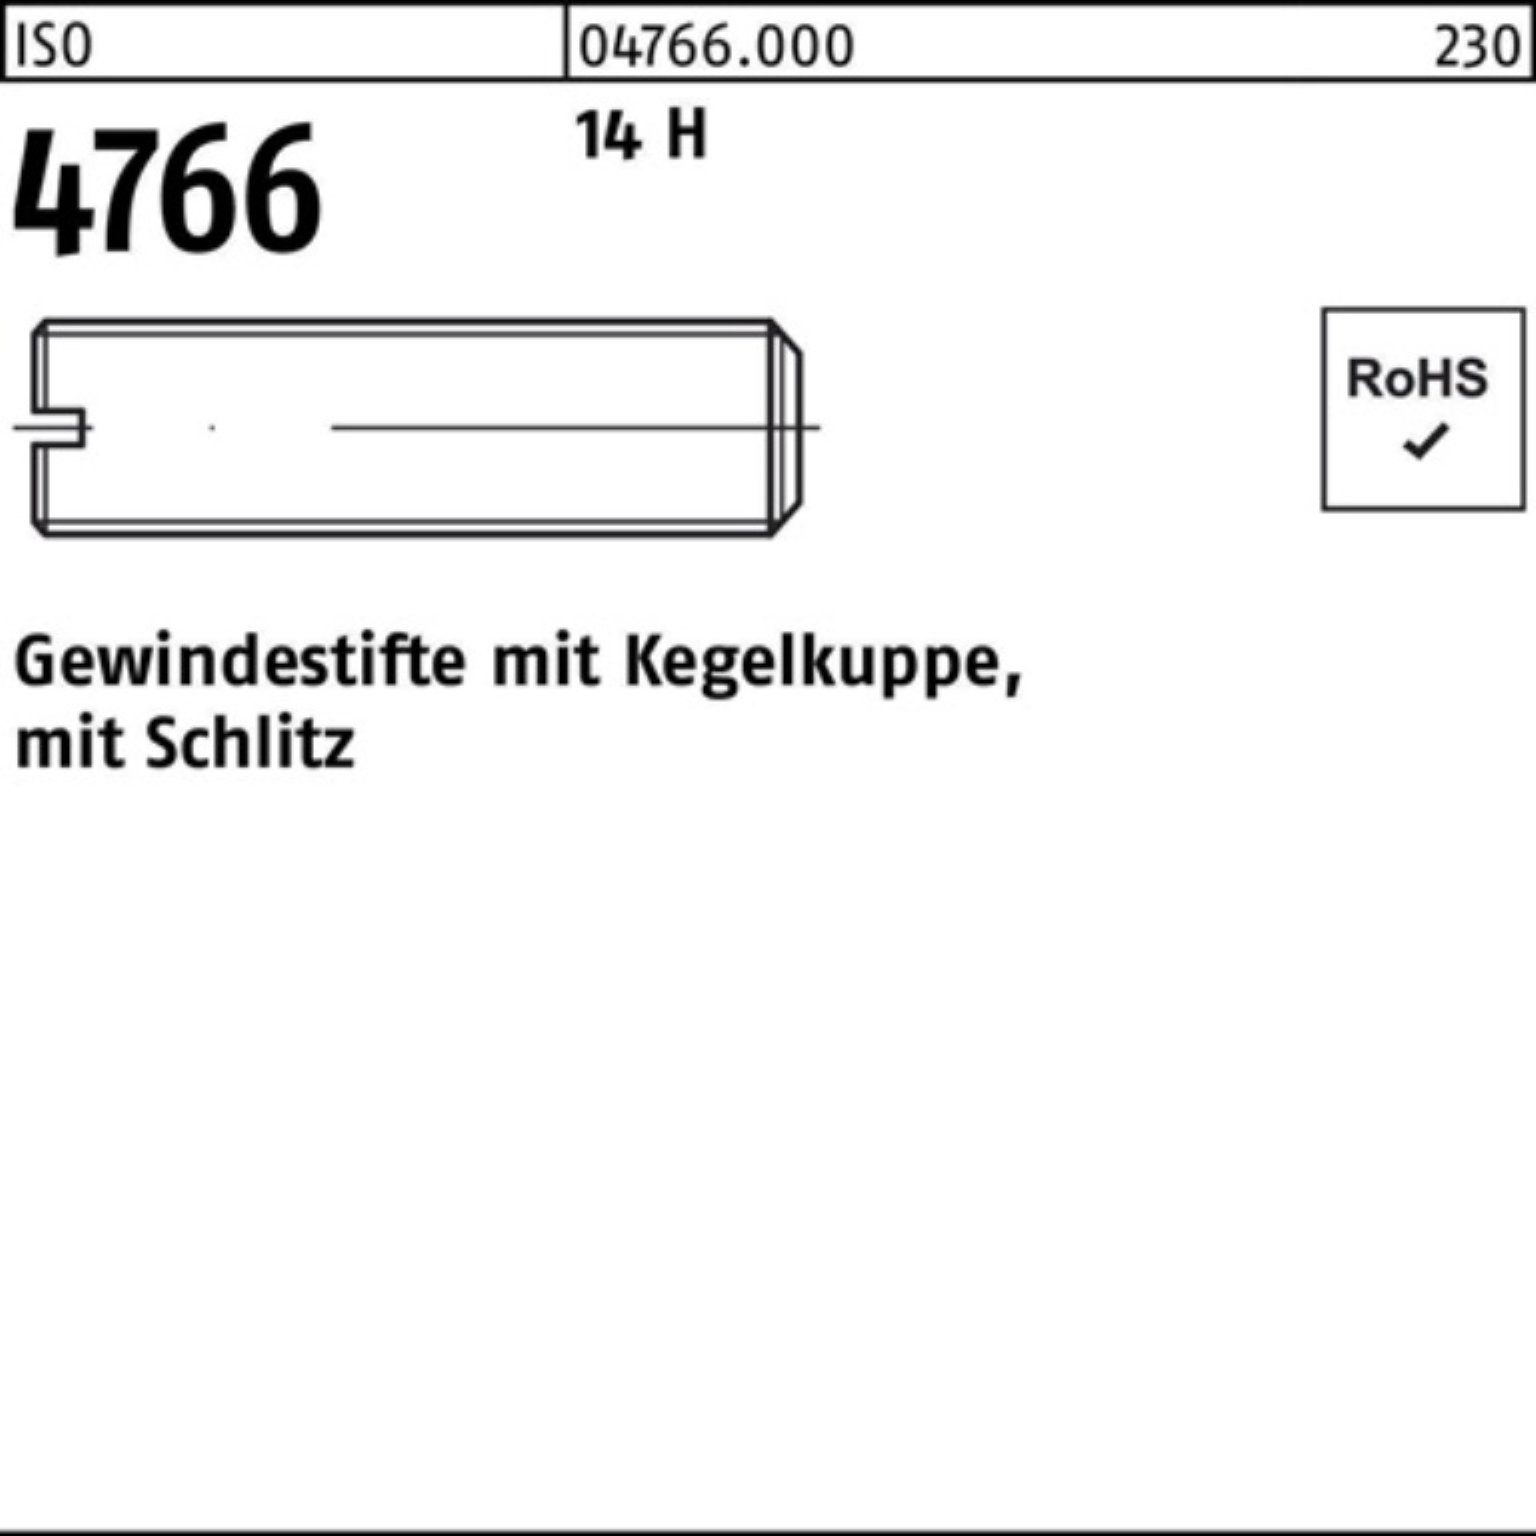 8 Reyher Gewindebolzen H 14 4766 Pack 200 M2,5x Gewindestift Kegelkuppe/Schlitz S 200er ISO